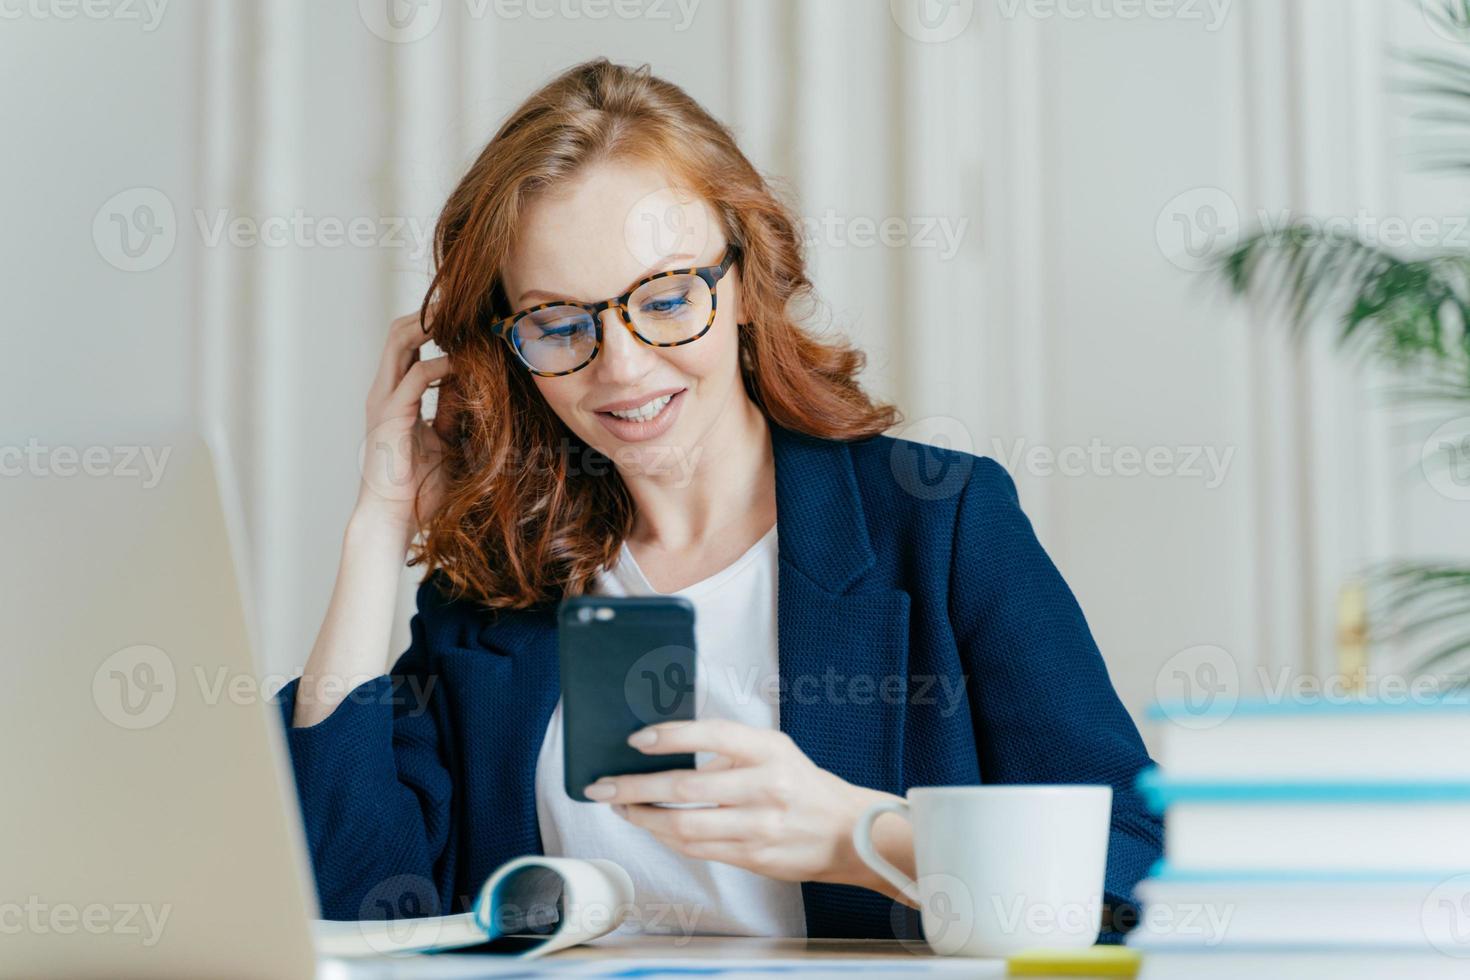 foto van vrouwelijke freelancer gebruikt smartphone voor online communicatie, heeft rood krullend haar, draagt een optische bril en een formeel kostuum, heeft een koffiepauze na het werken op een laptop, gebruikt gratis wifi